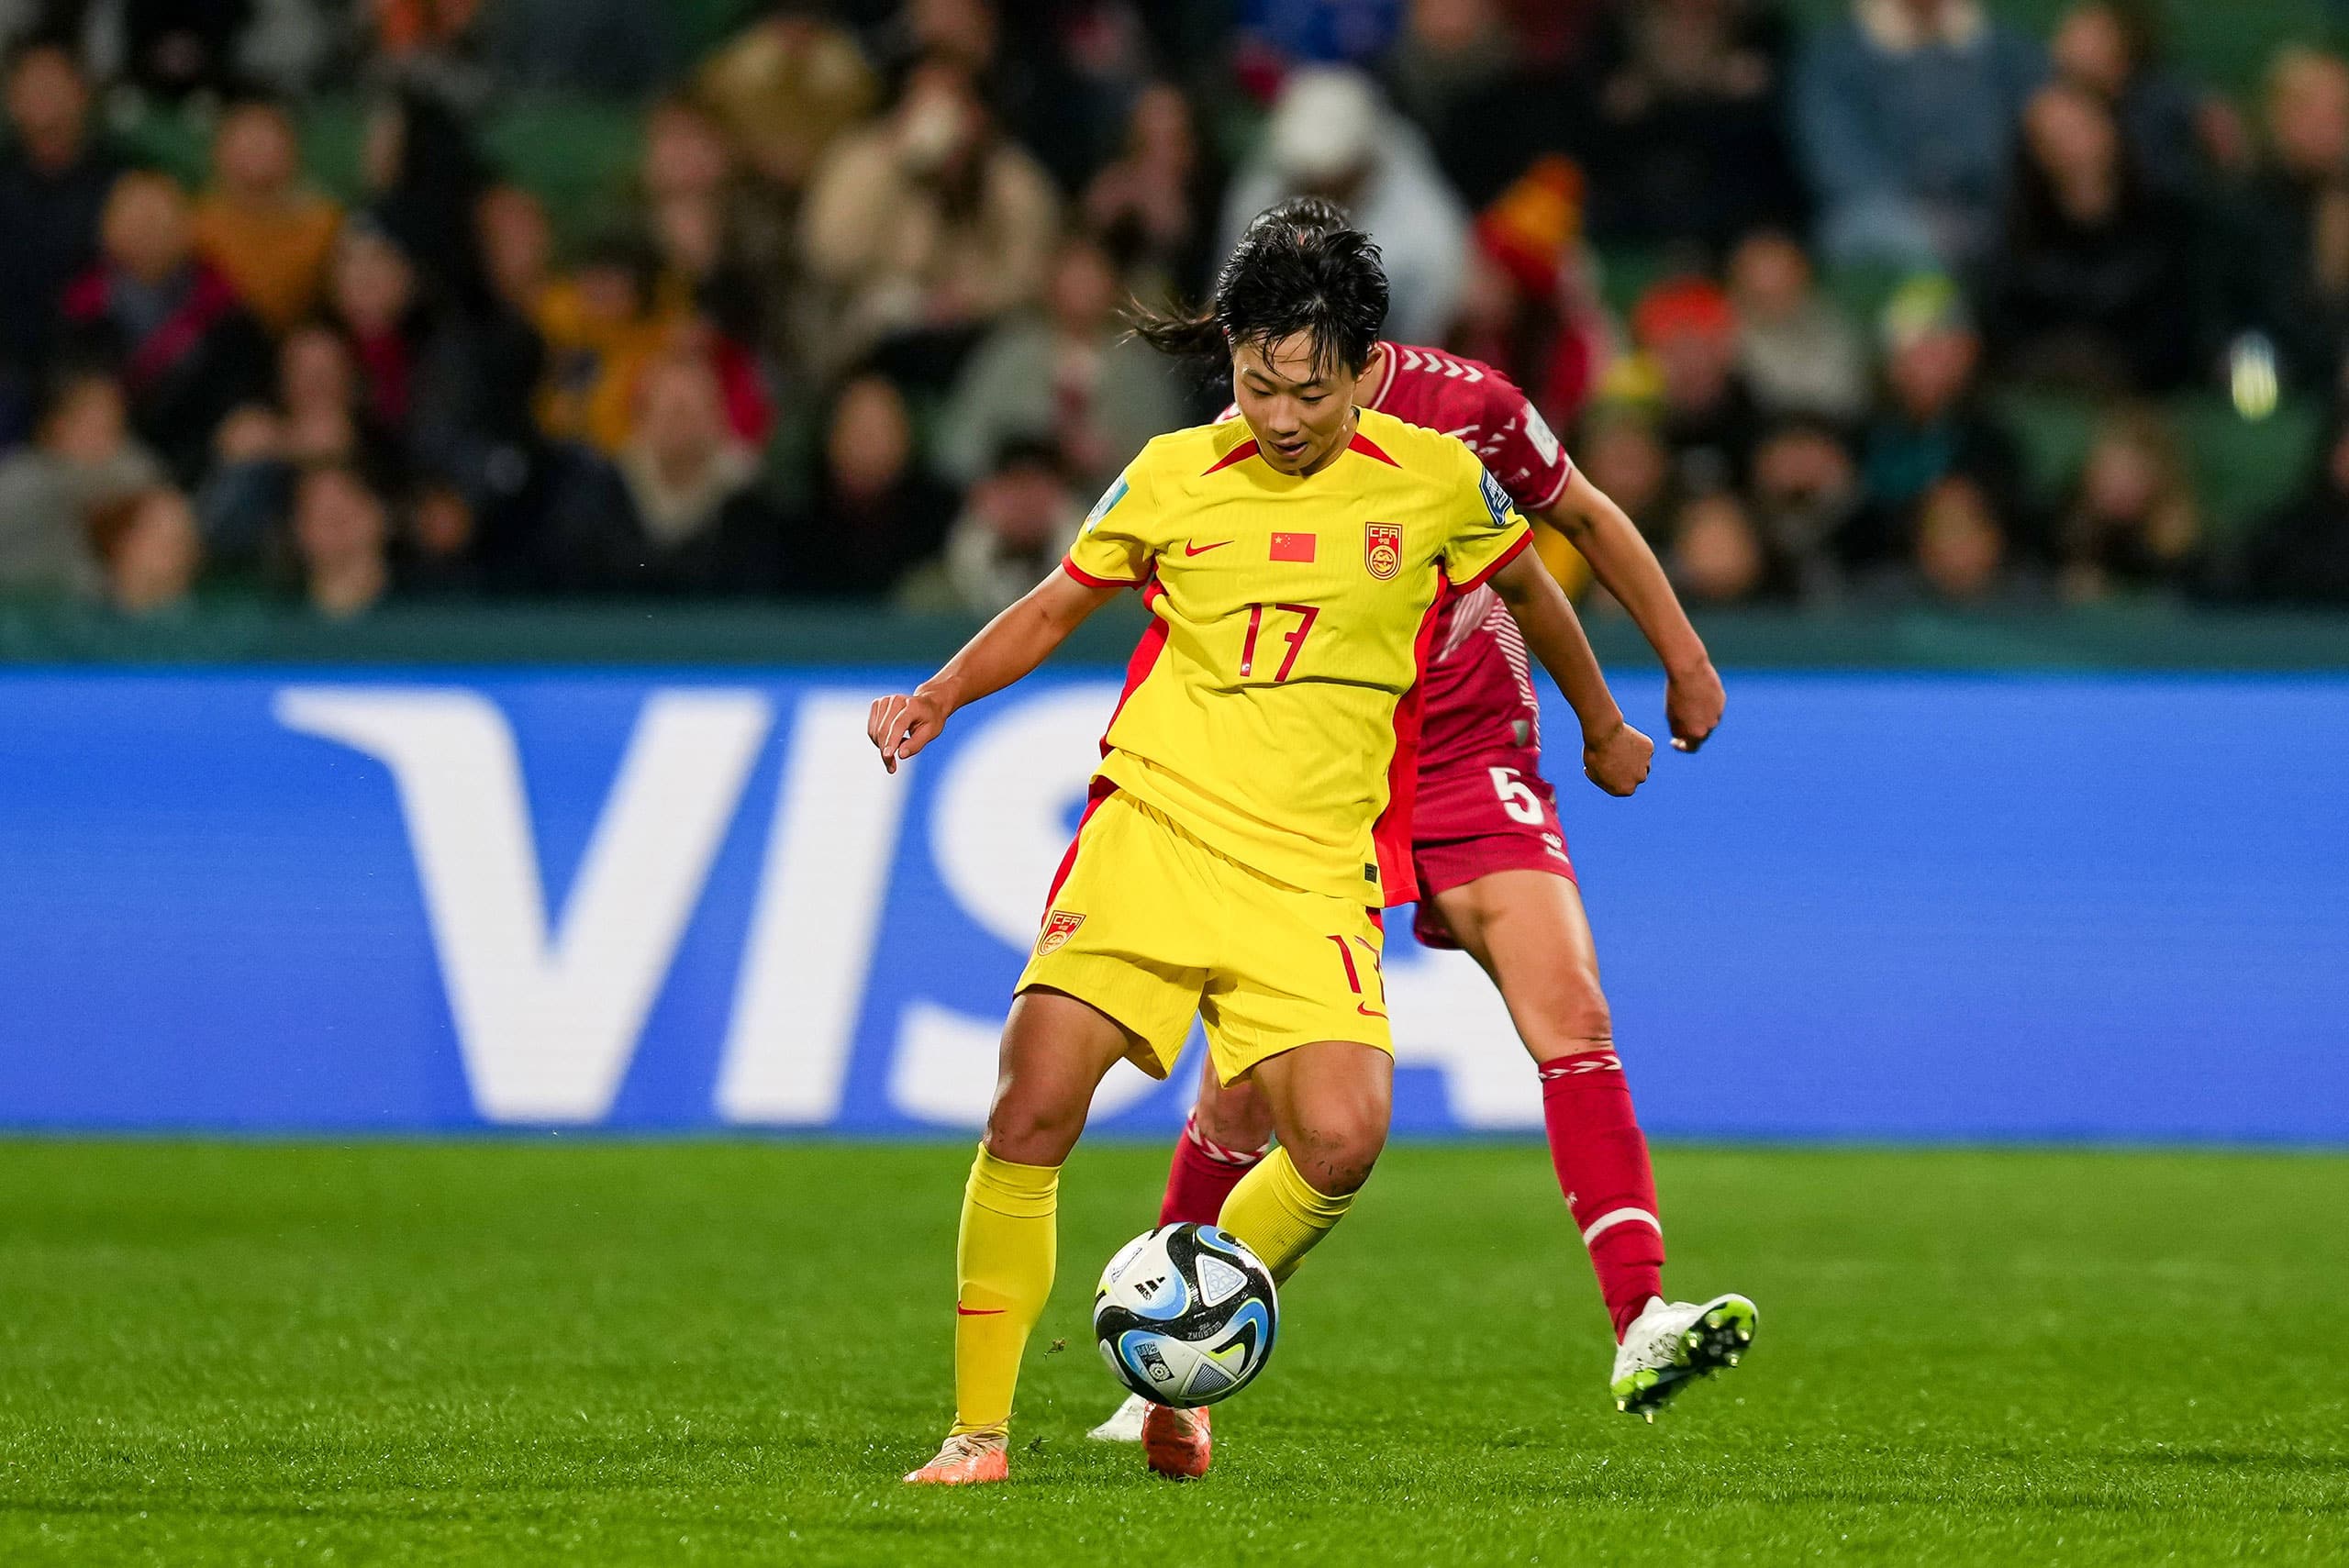 Chengshu Wu (17 China PR) controla a bola durante a partida de futebol do Grupo D da Copa do Mundo Feminina da FIFA 2023 entre Dinamarca e China no Perth Rectangular Stadium em Perth.